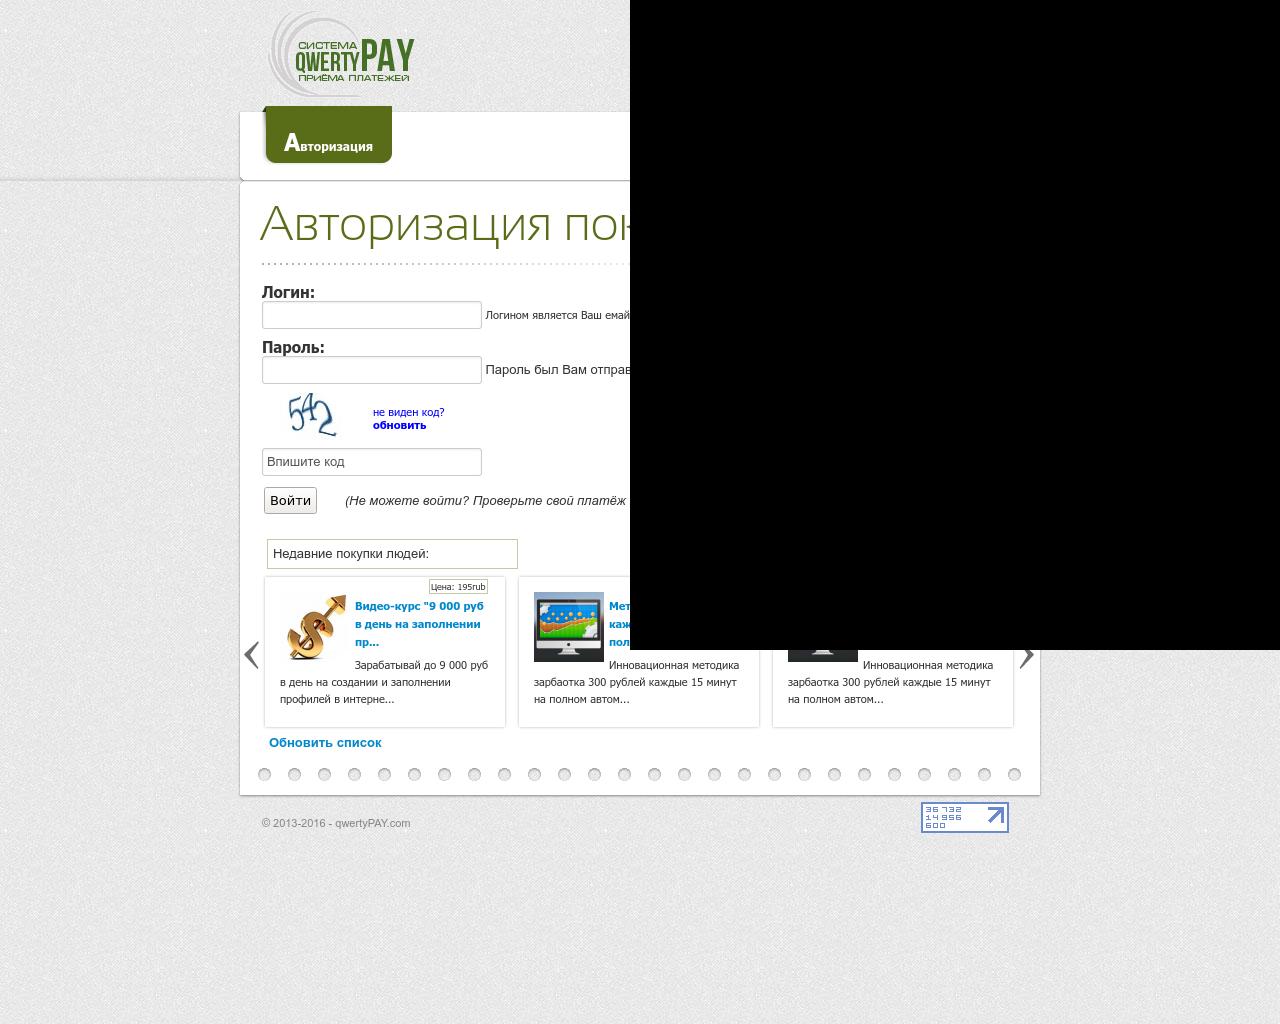 Изображение сайта redvip.ru в разрешении 1280x1024